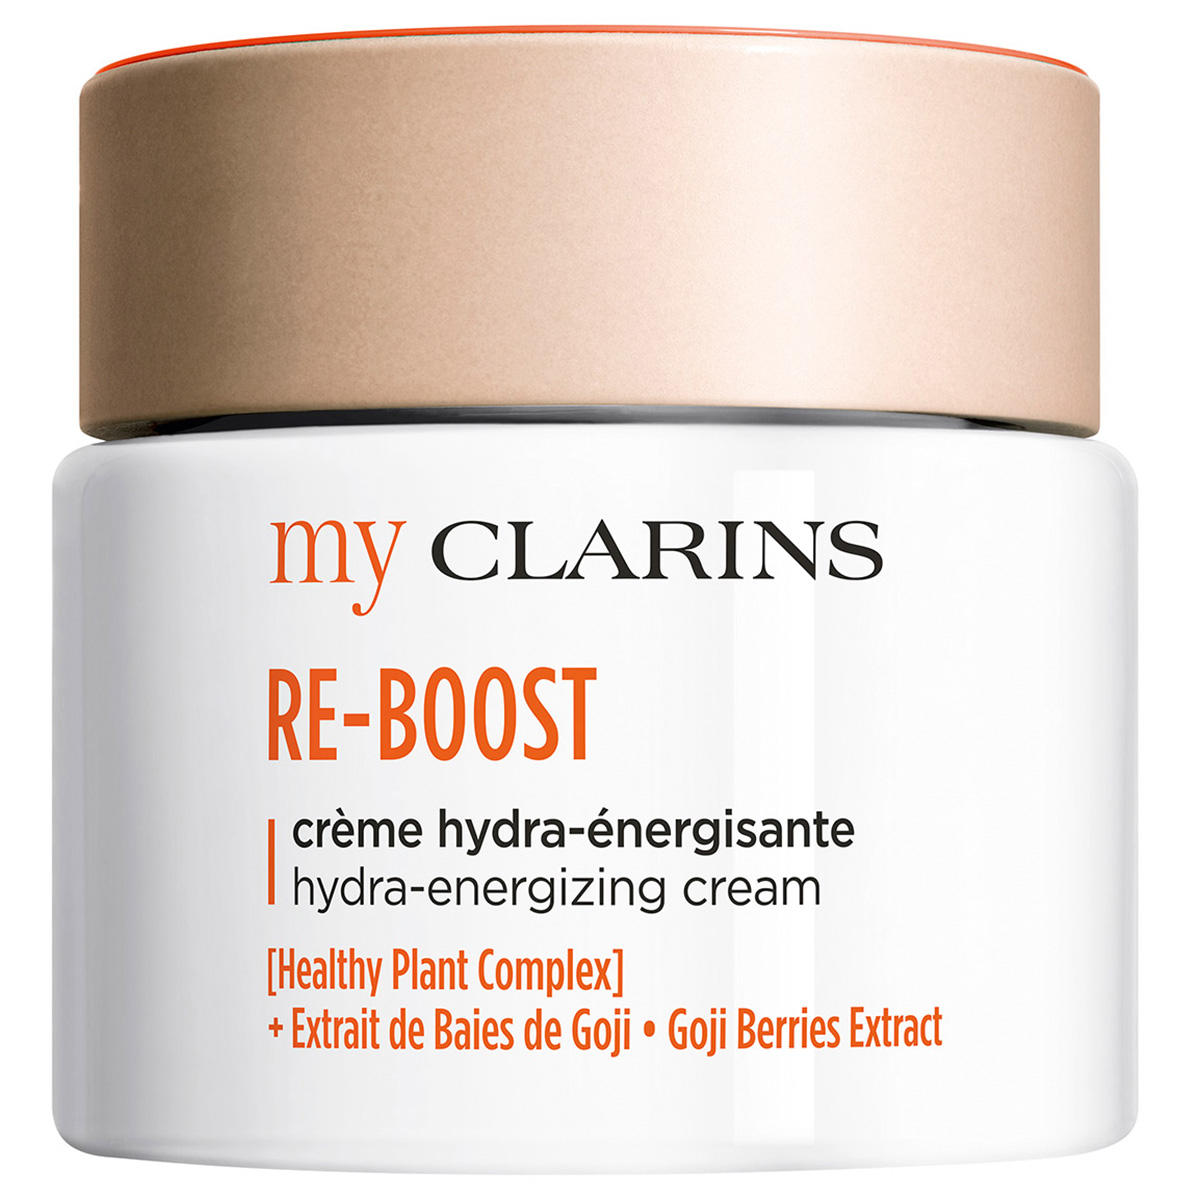 CLARINS myCLARINS Re-Boost Hydra-Energizing Cream 50 ml - 1